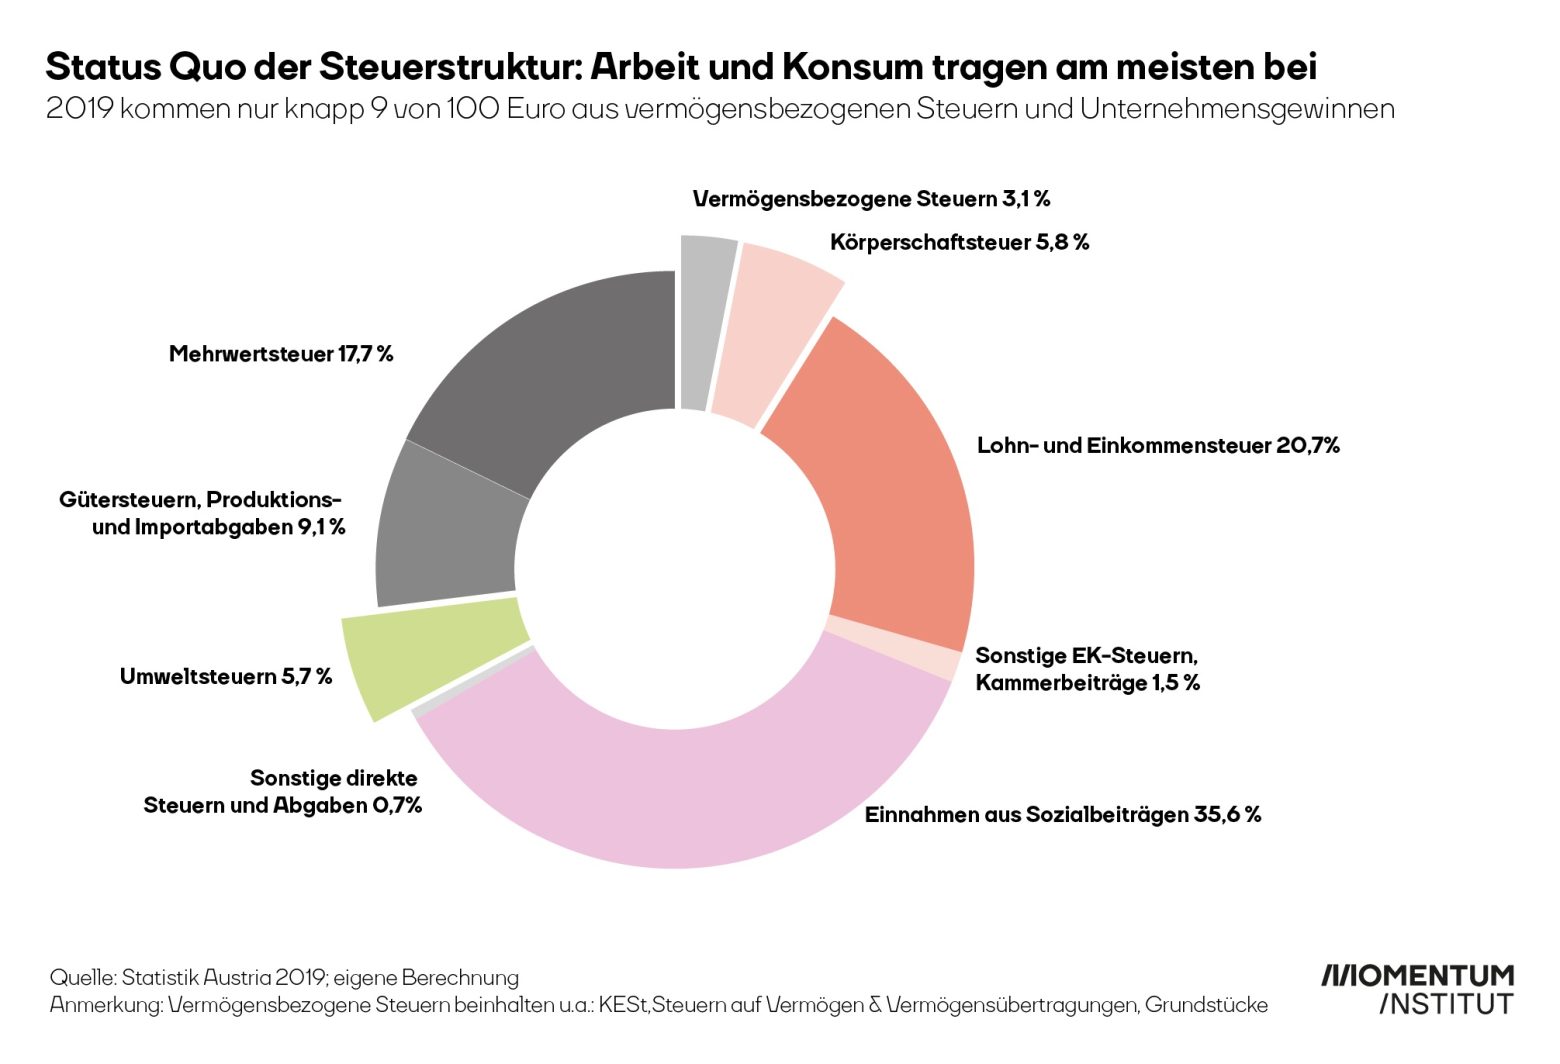 Die Grafik zeigt die Steuerstruktur in Österreich 2019. Nur Knapp 9 von 100 Euro kommen aus vermögensbezogenen Steuern und Unternehmensgewinnen. Der Großteil kommt aus Steuern auf Arbeit und Konsum.